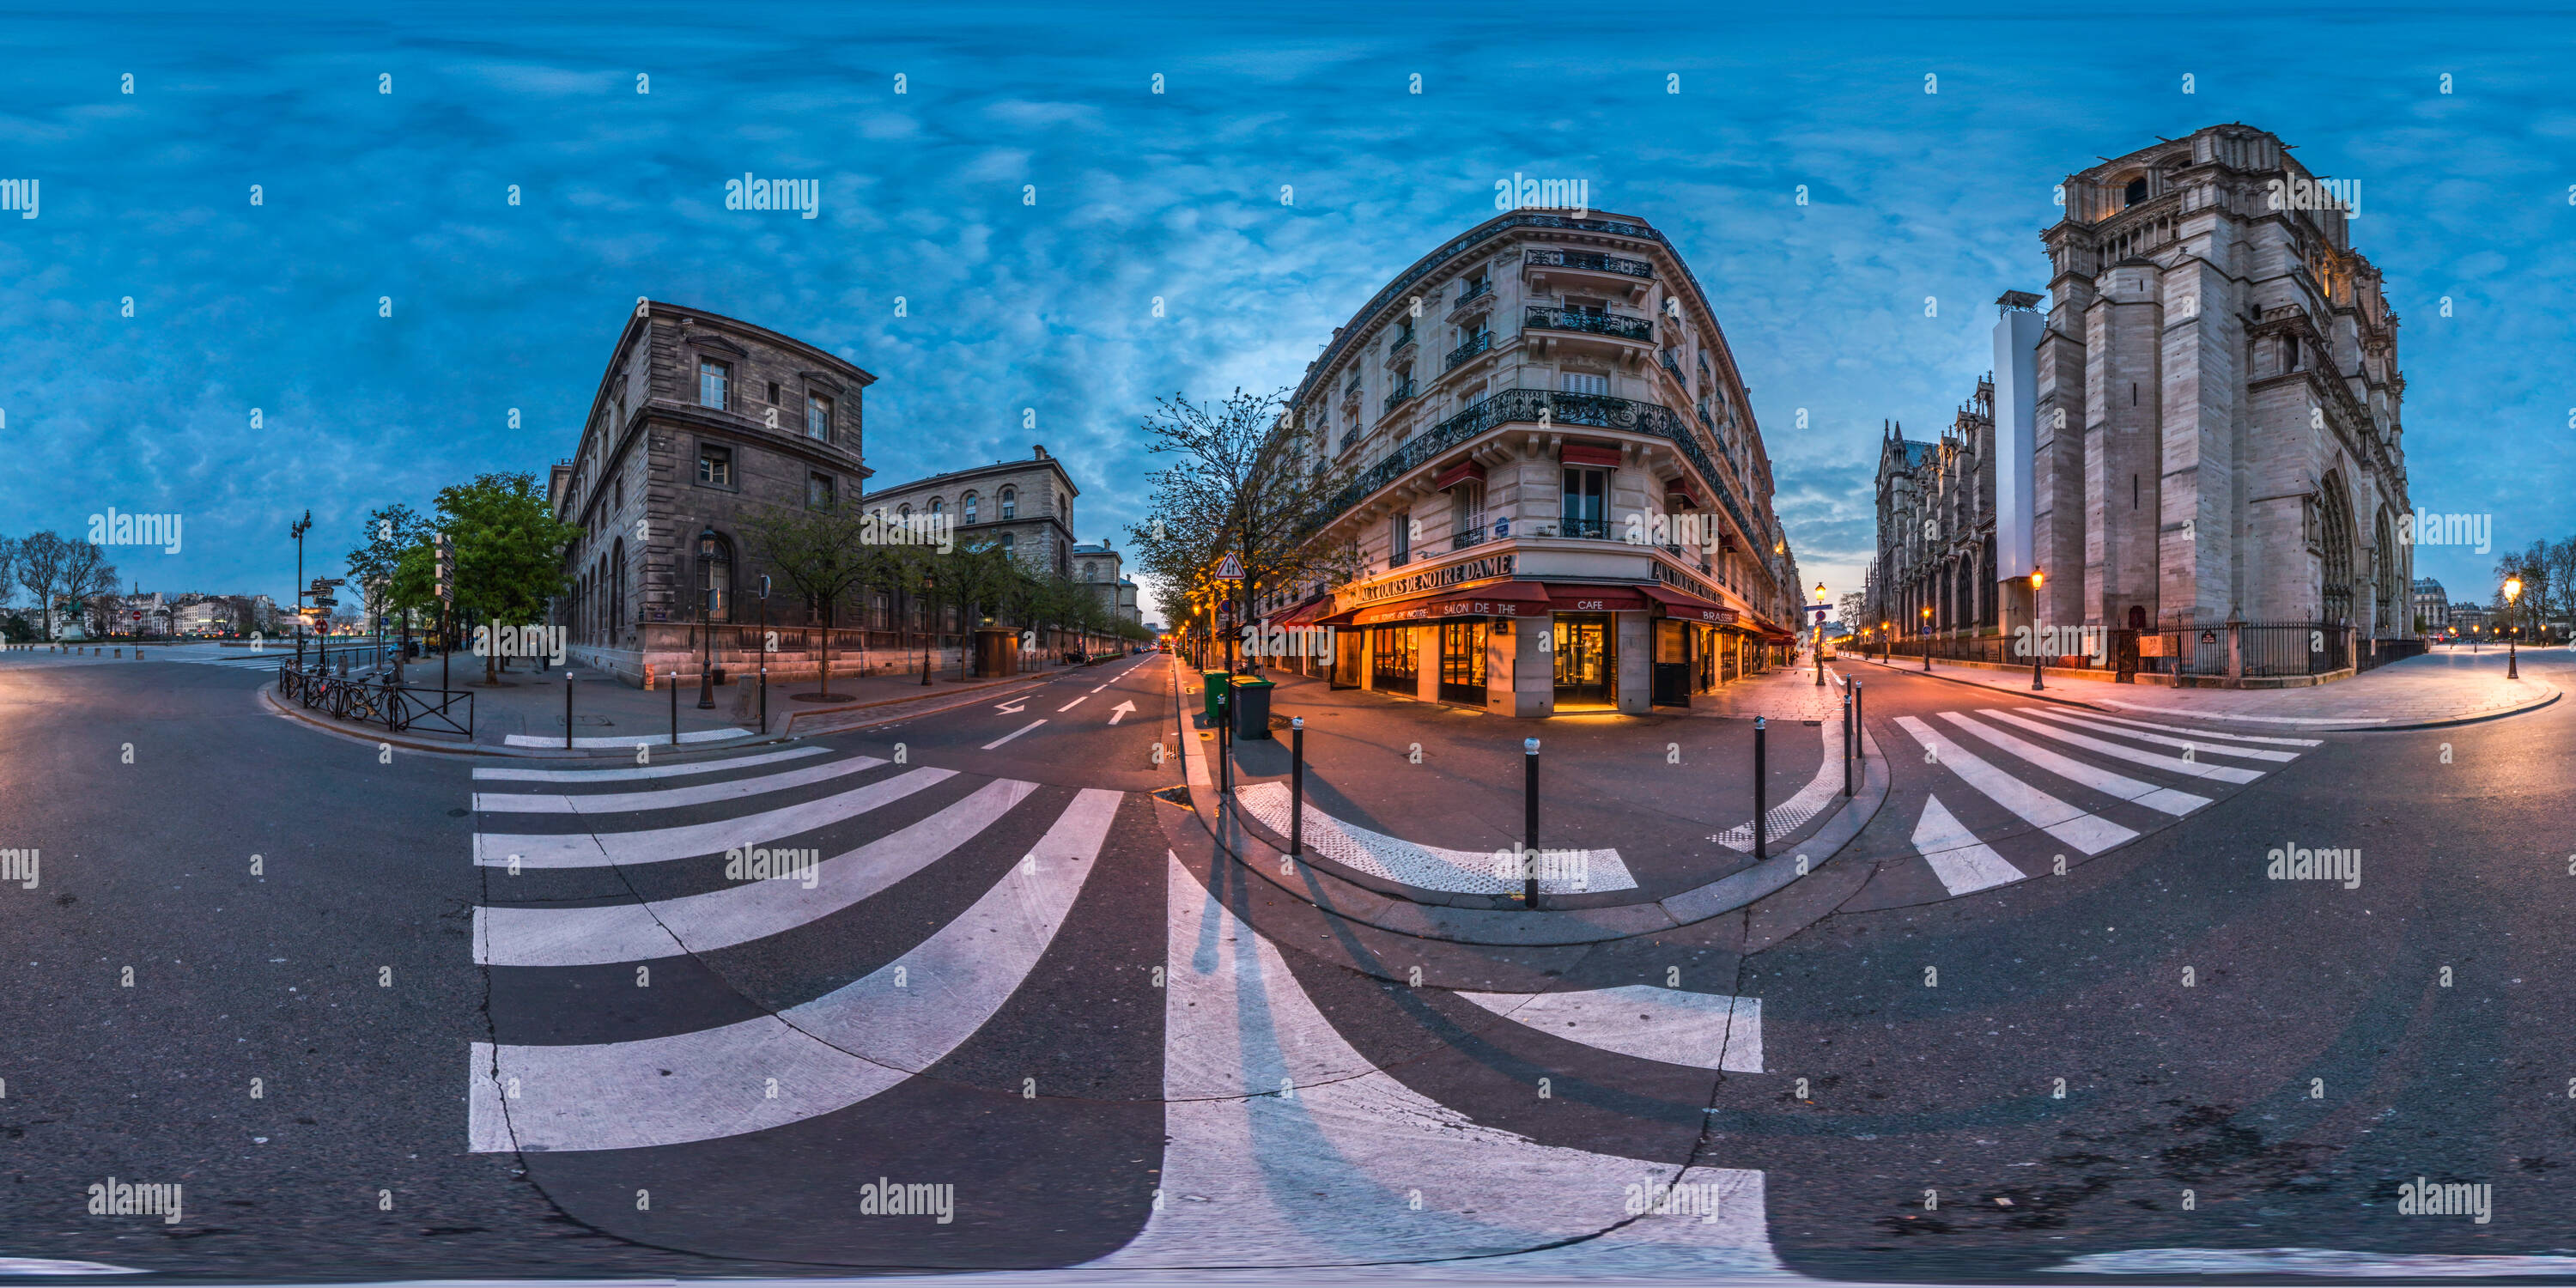 Visualizzazione panoramica a 360 gradi di Prima luce a Notre Dame, Paris, 2014.